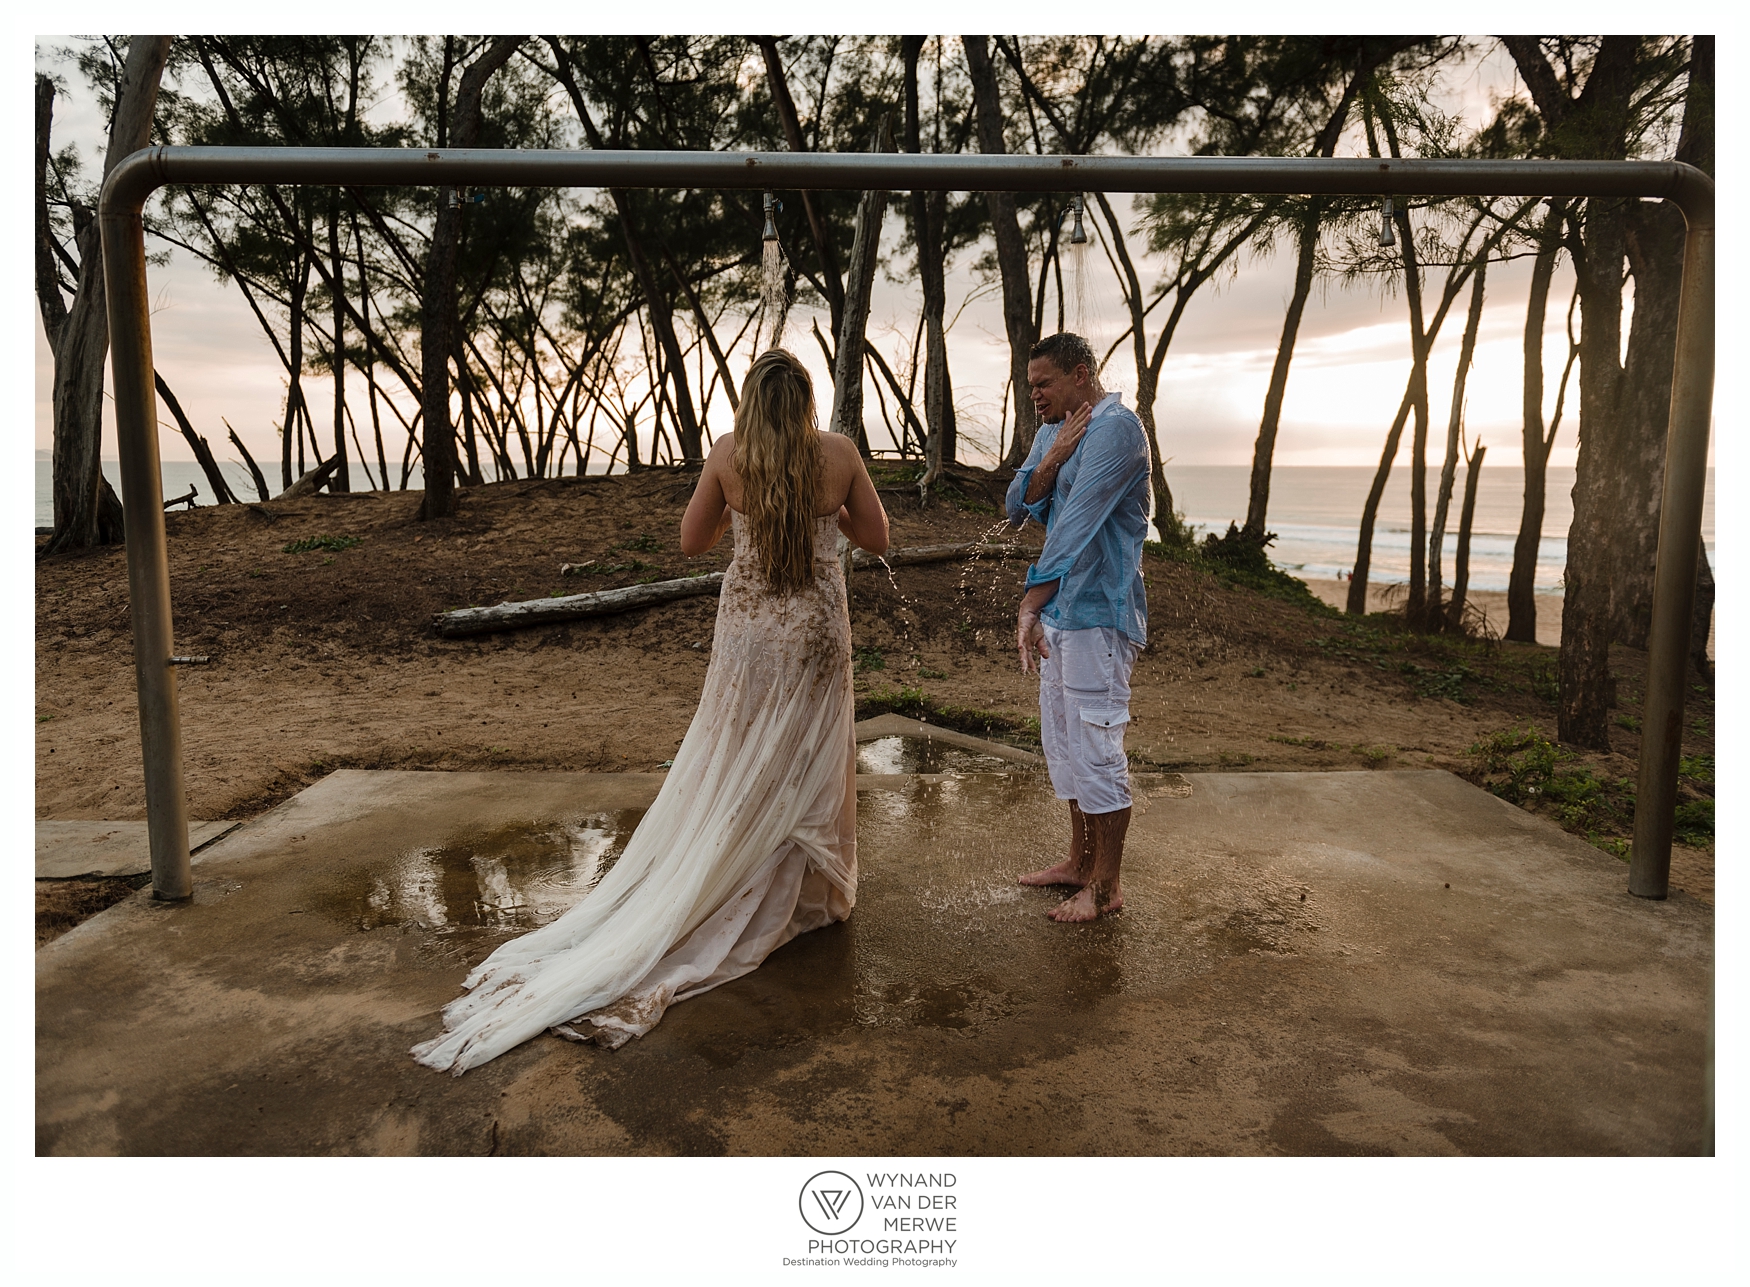 Tyronne and Romandi's Destination Wedding at Sodwana Bay